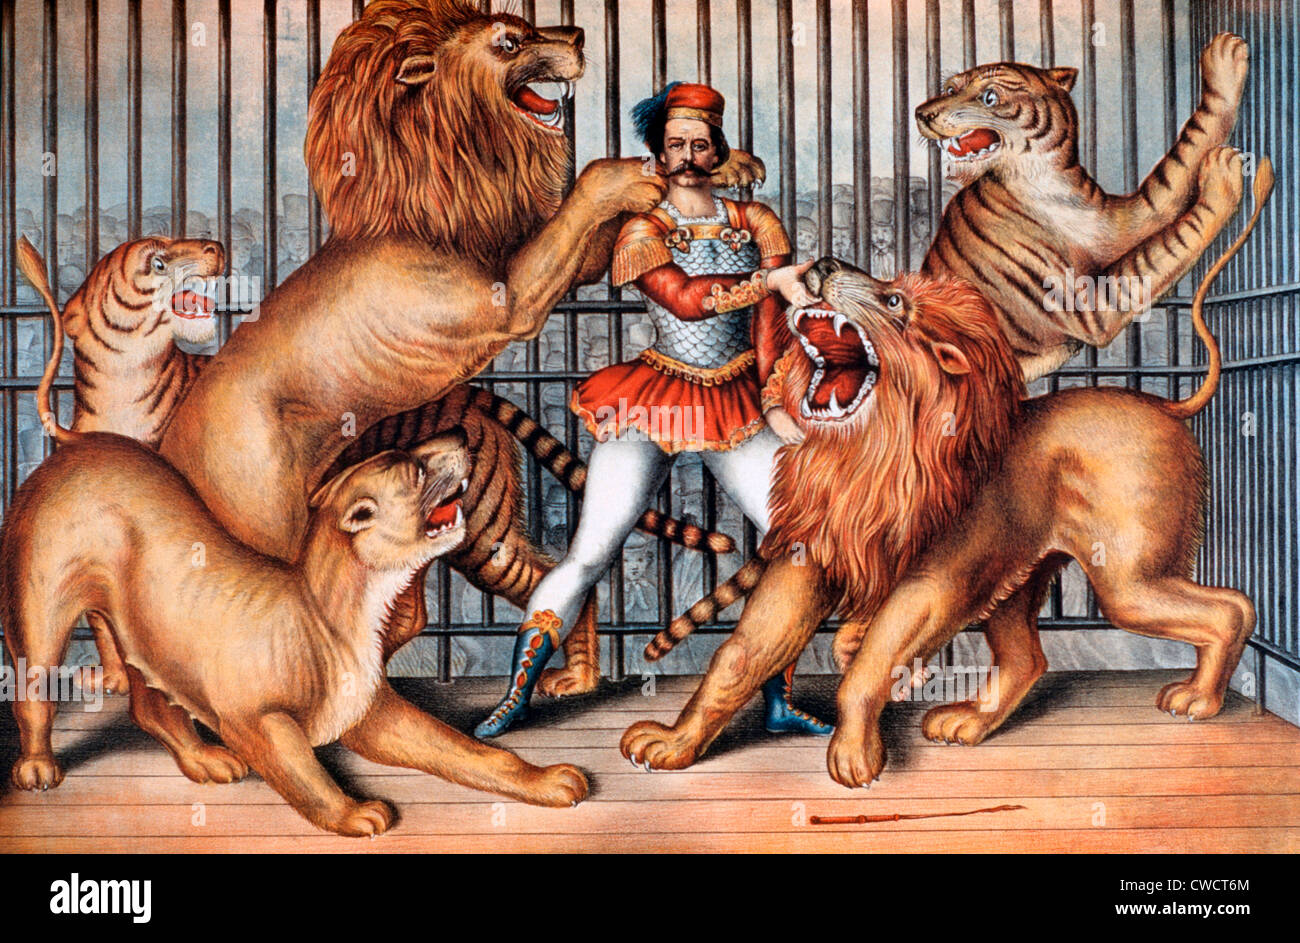 Dompteur de cirque, Poster, 1873 Banque D'Images